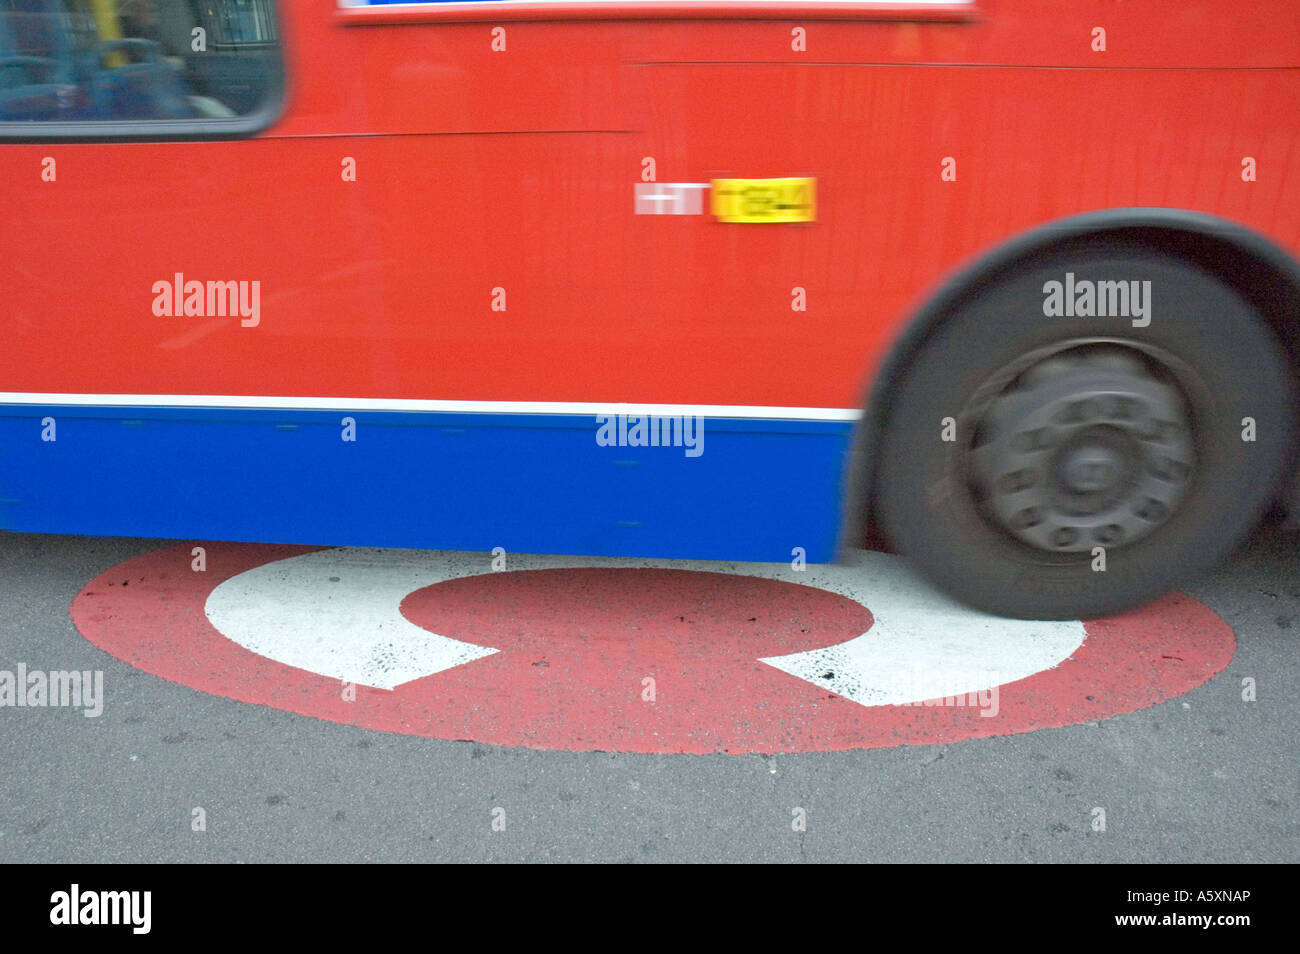 Congestion charge symbole signe avec le bus Old Street London England UK rond-point Banque D'Images